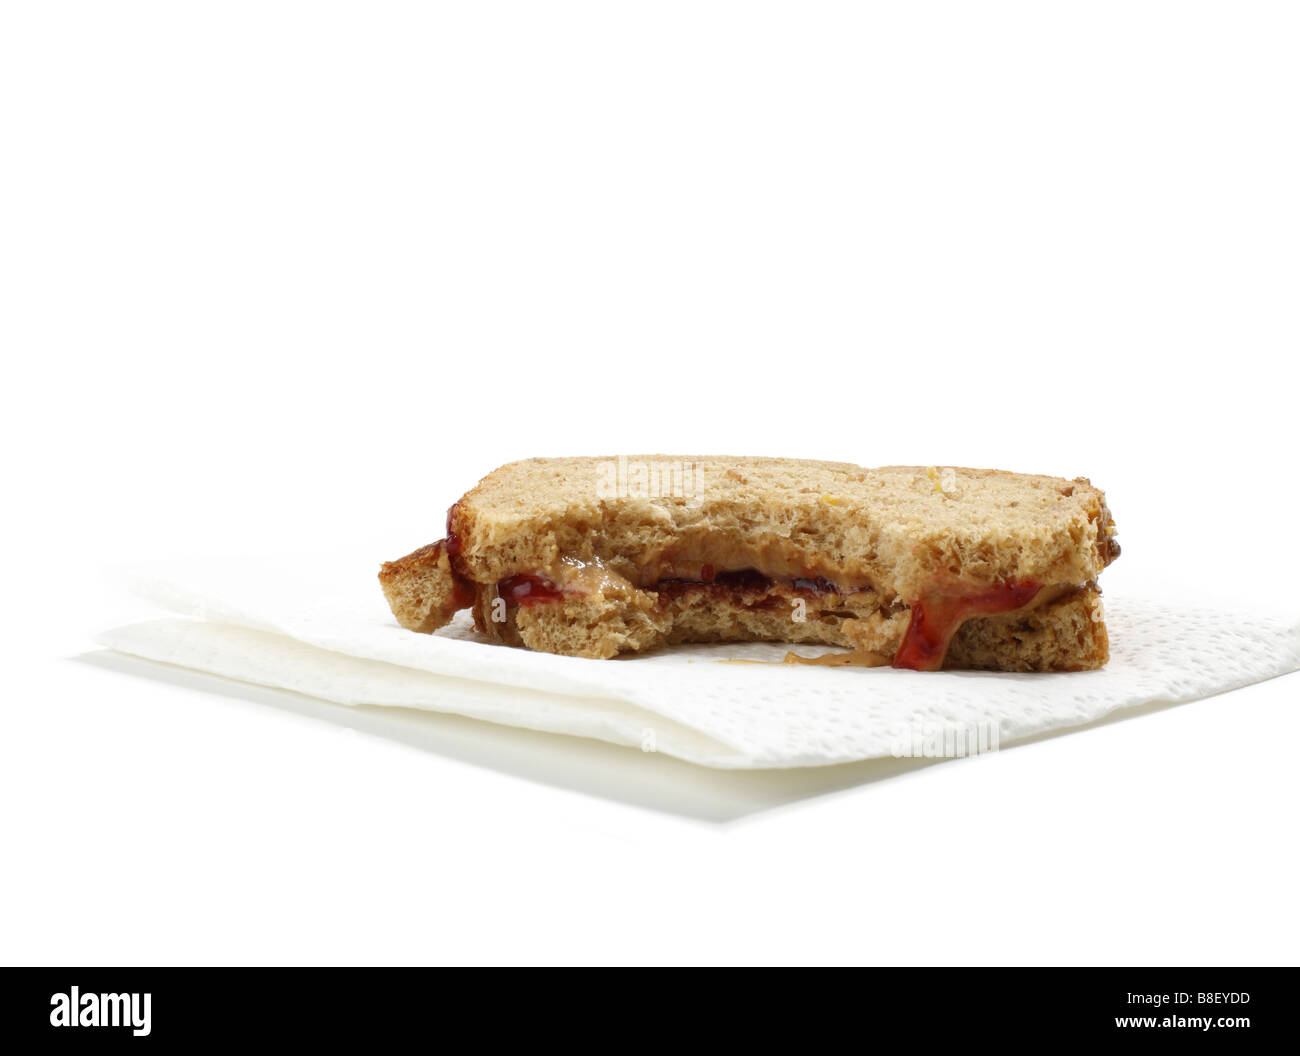 Burro di arachidi e jelly sandwich con morso prelevato Foto Stock